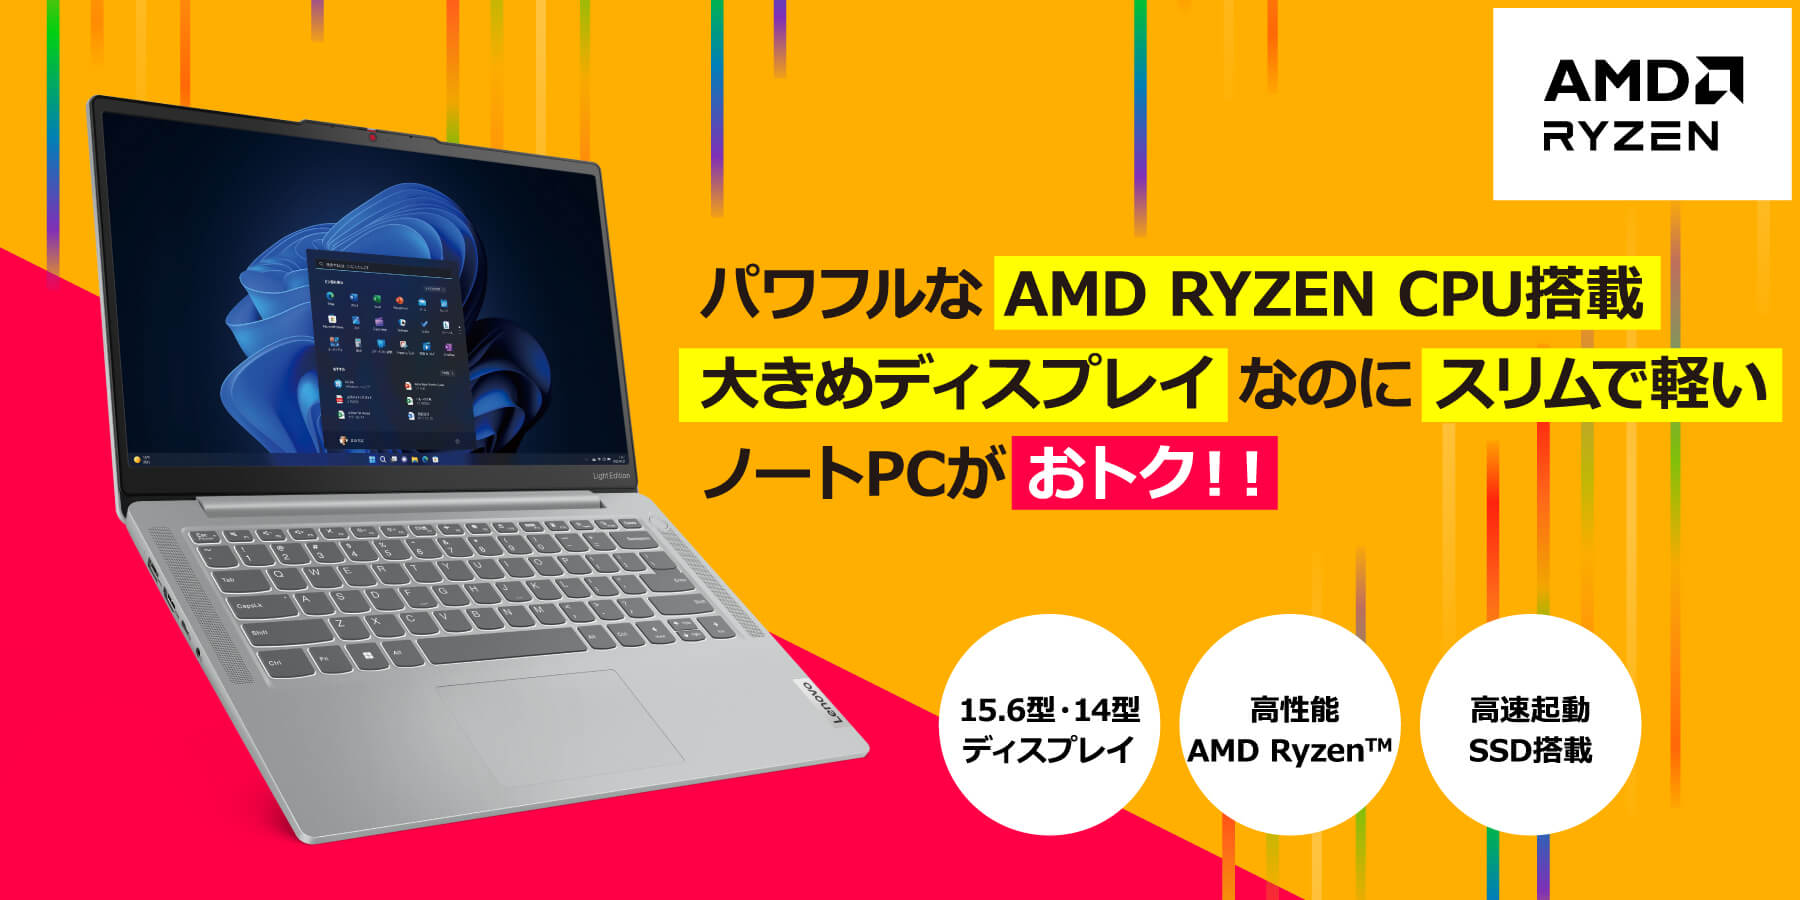 pt AMD RYZEN CPUڑ傫߃fBXvCȂ̂ɃXŌym[gPCgNII 15.6^E14^fBXvC \AMD Ryzen NSSD